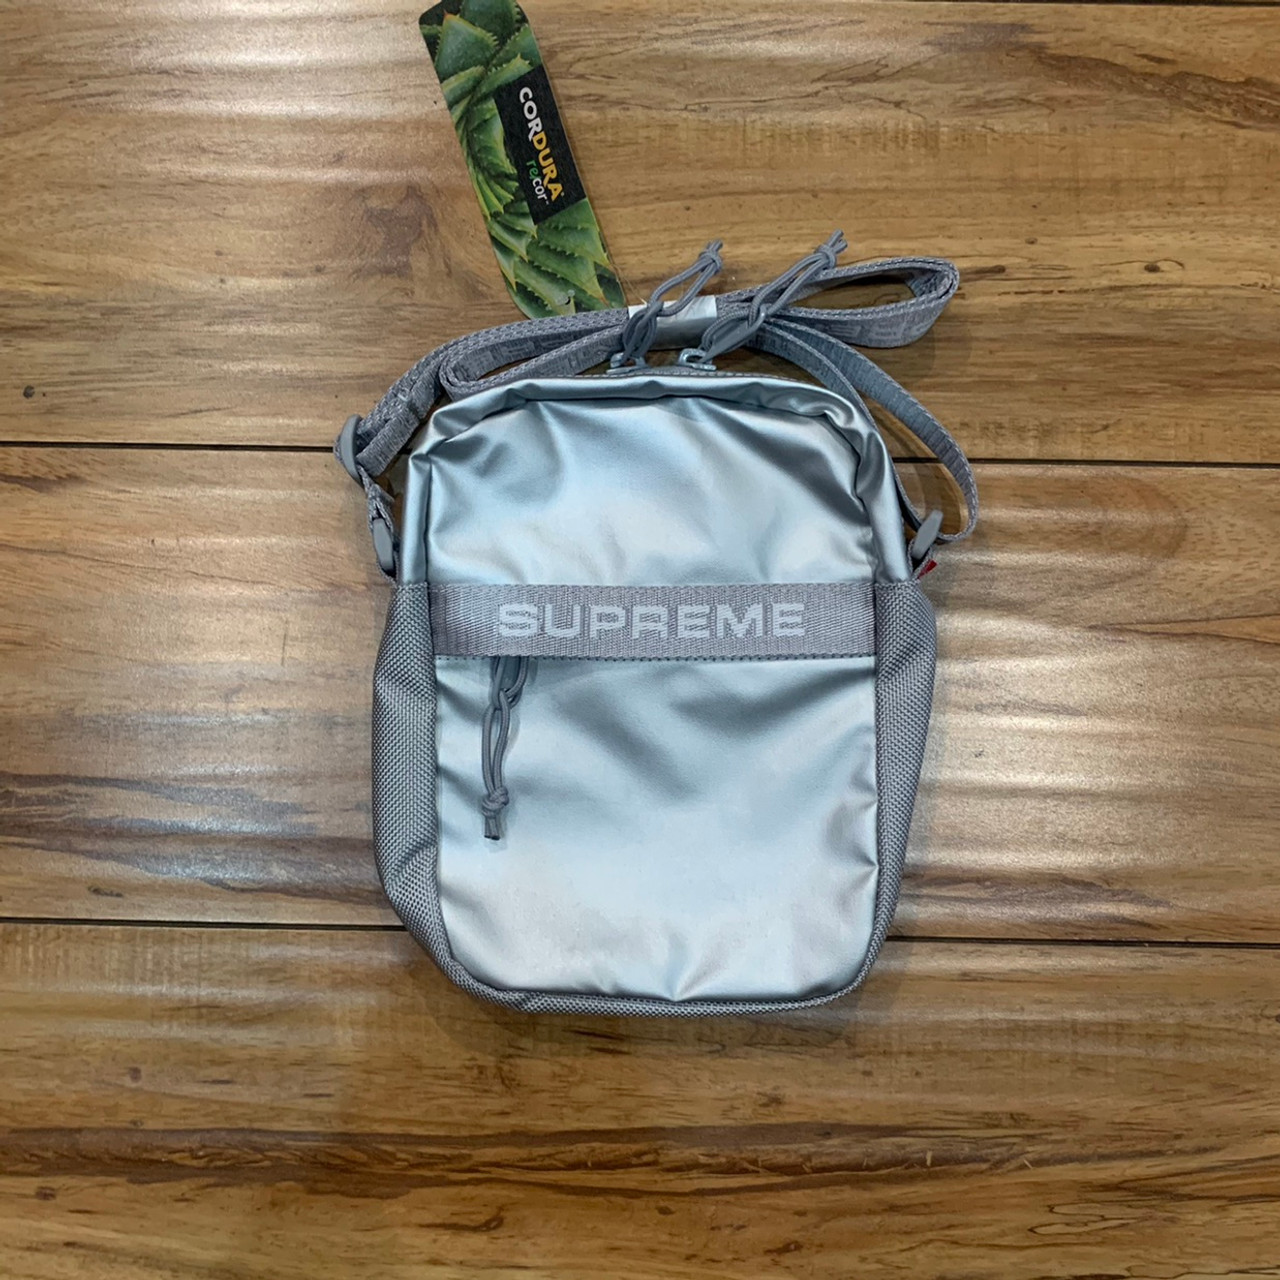 Supreme Shoulder Bag (FW22) - Silver